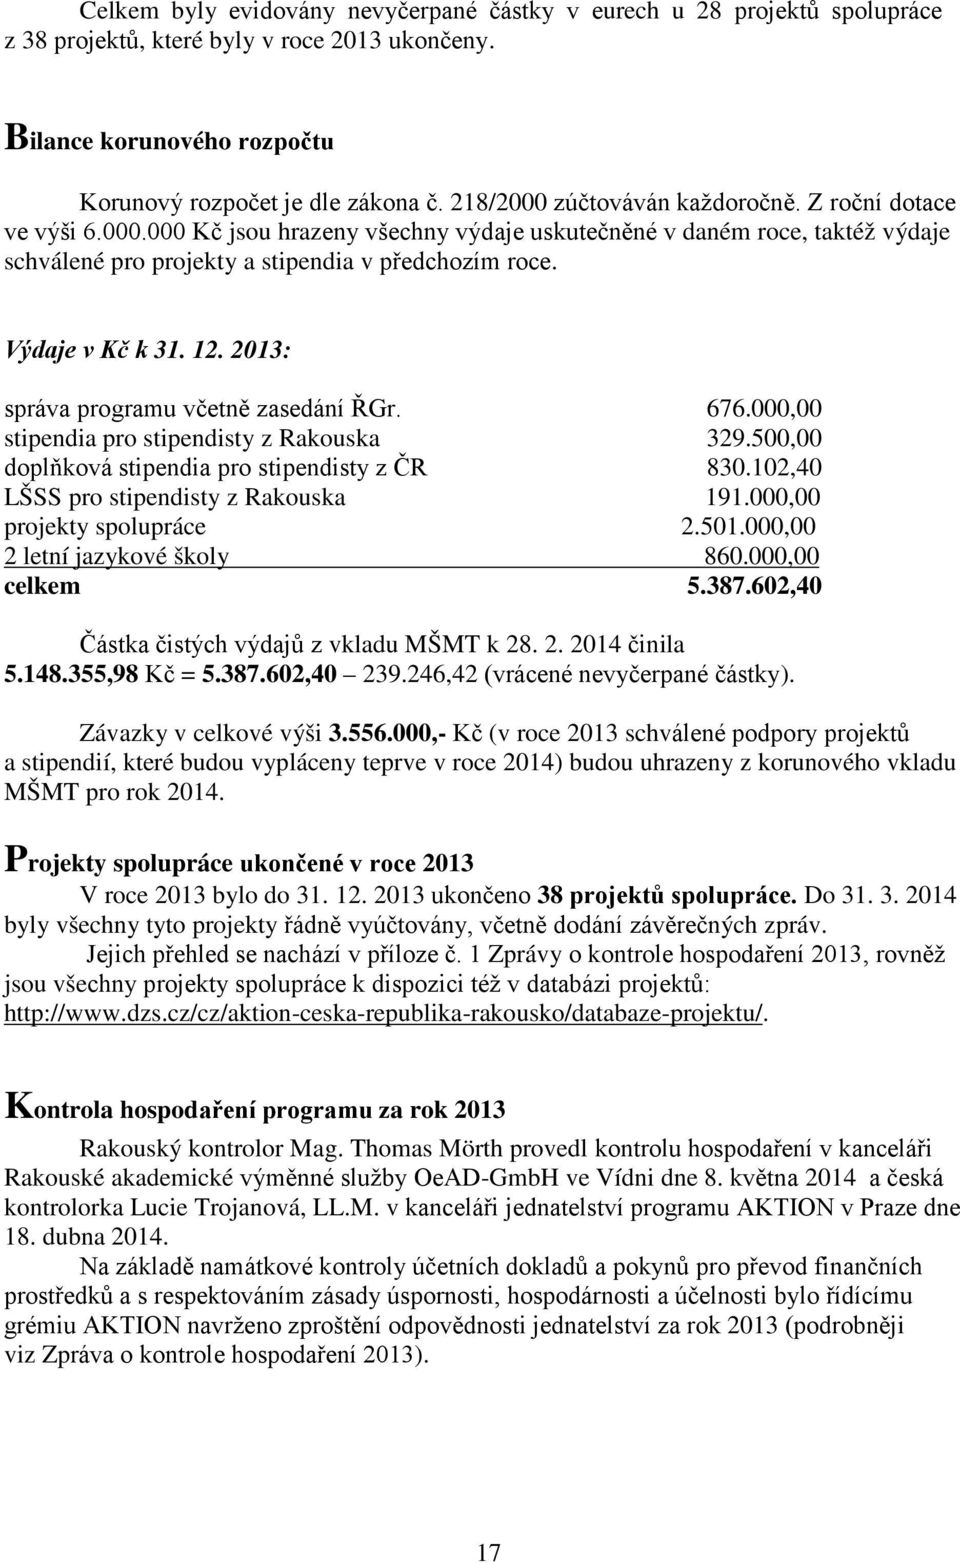 Výdaje v Kč k 31. 12. 2013: správa programu včetně zasedání ŘGr. 676.000,00 stipendia pro stipendisty z Rakouska 329.500,00 doplňková stipendia pro stipendisty z ČR 830.